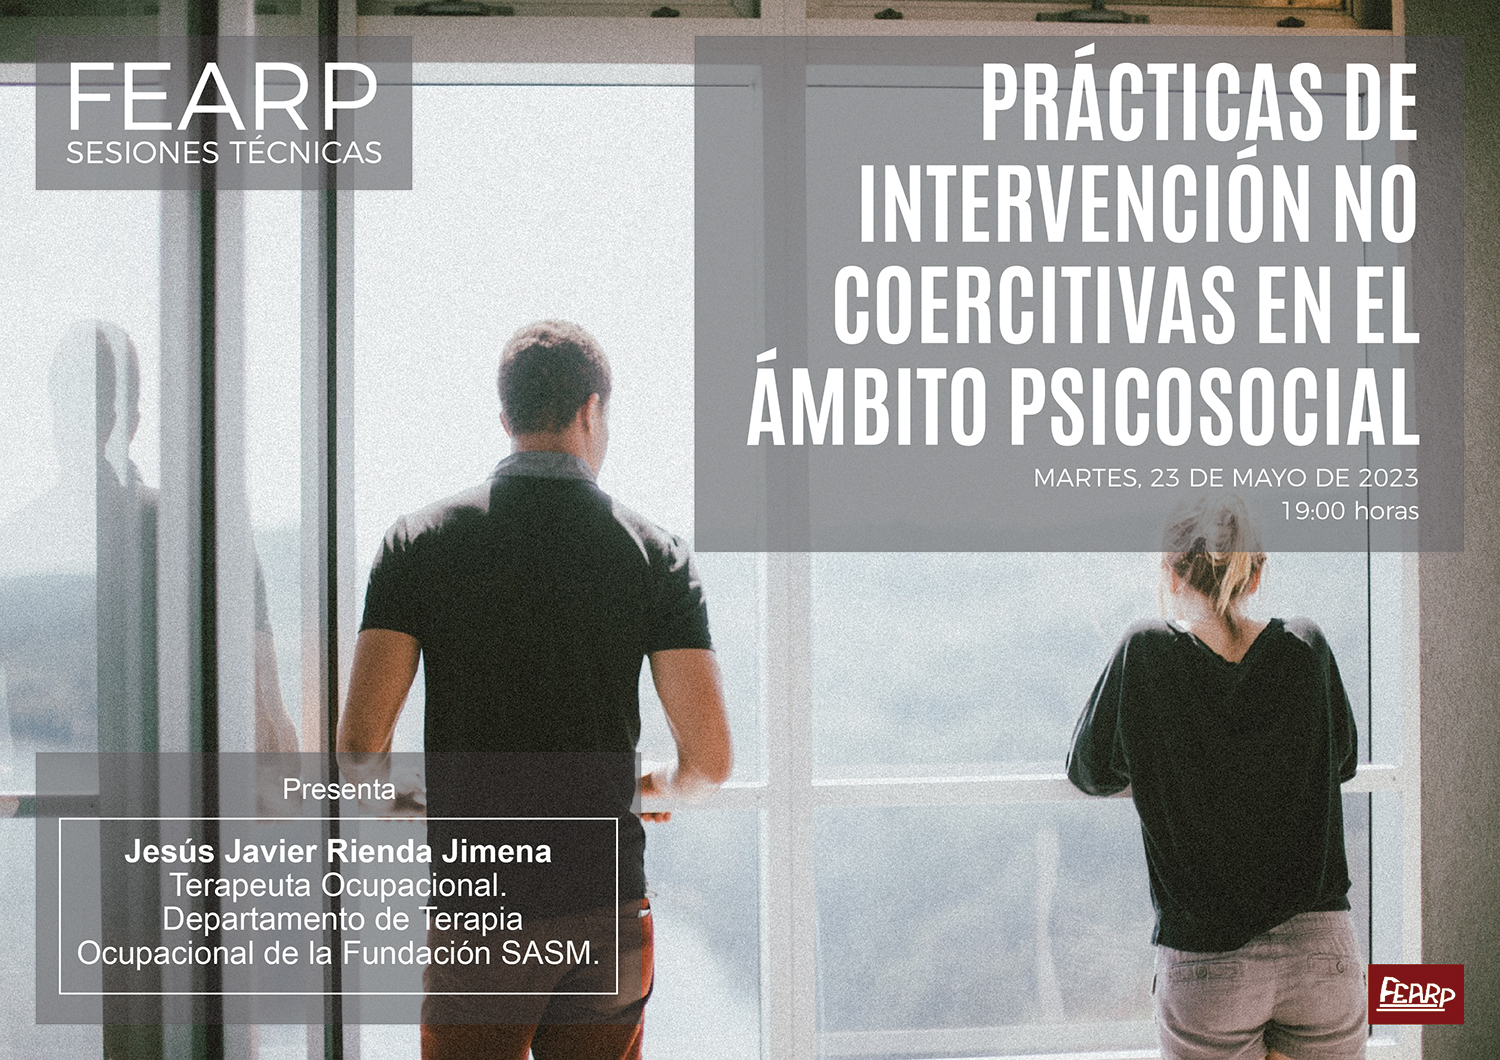 Prácticas de intervención no coercitivas en el ámbito psicosocial